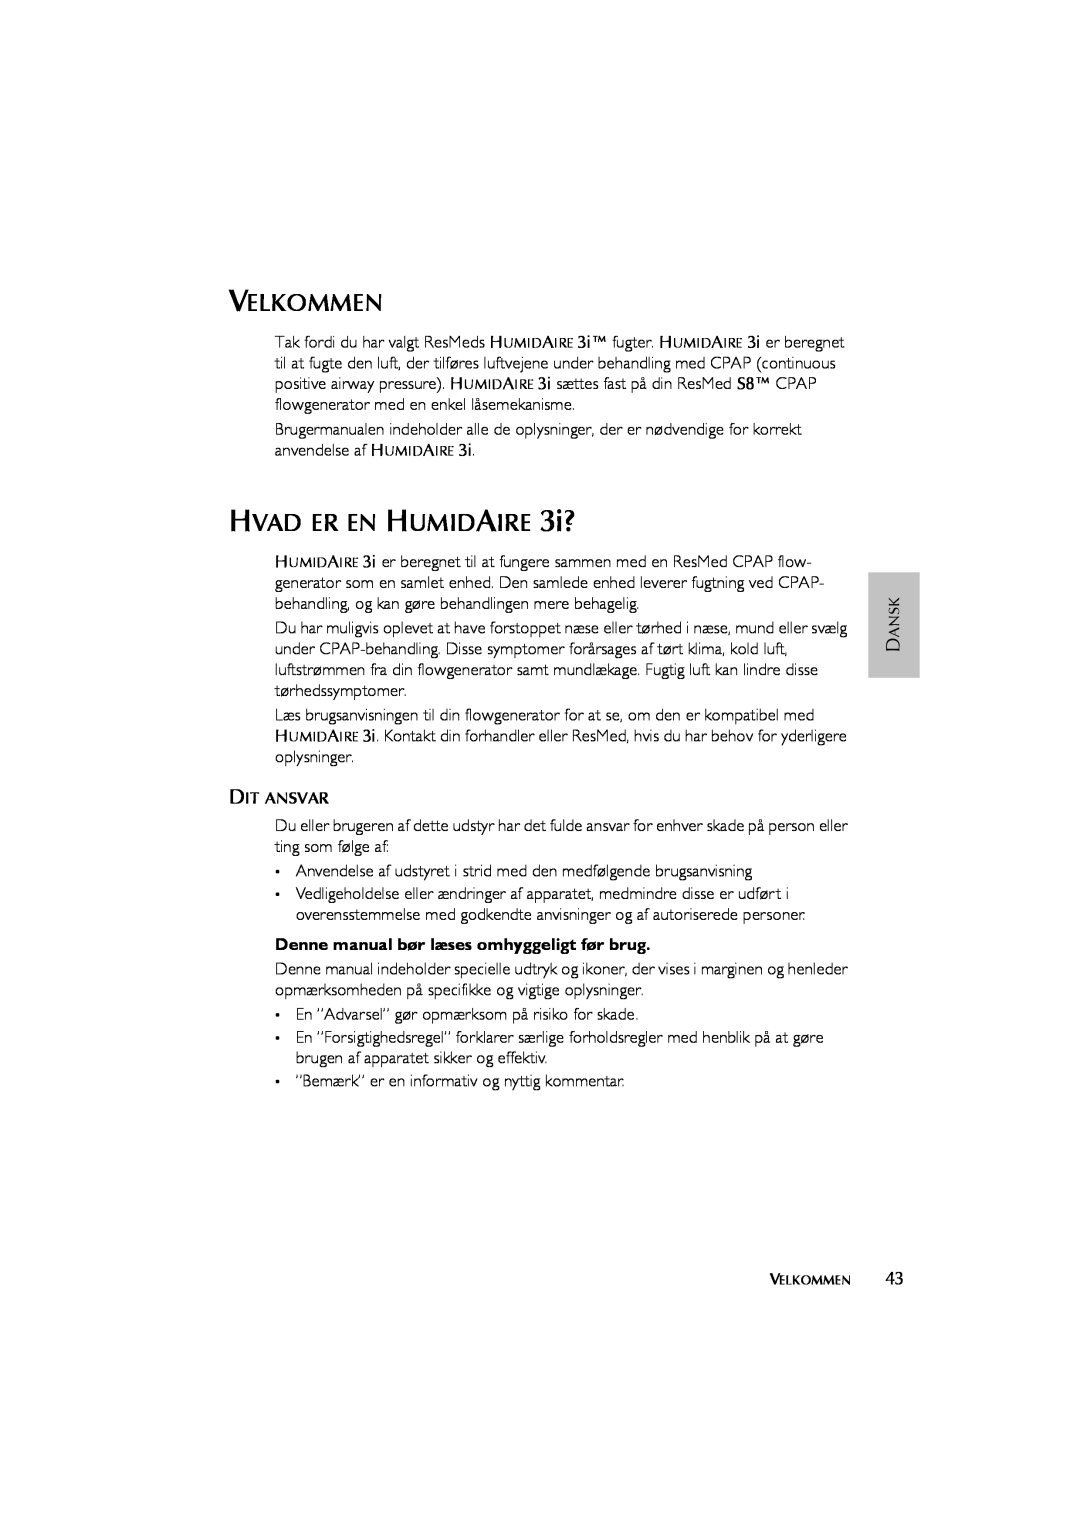 ResMed Humidifier user manual Velkommen, HVAD ER EN HUMIDAIRE 3i?, Denne manual bør læses omhyggeligt før brug 